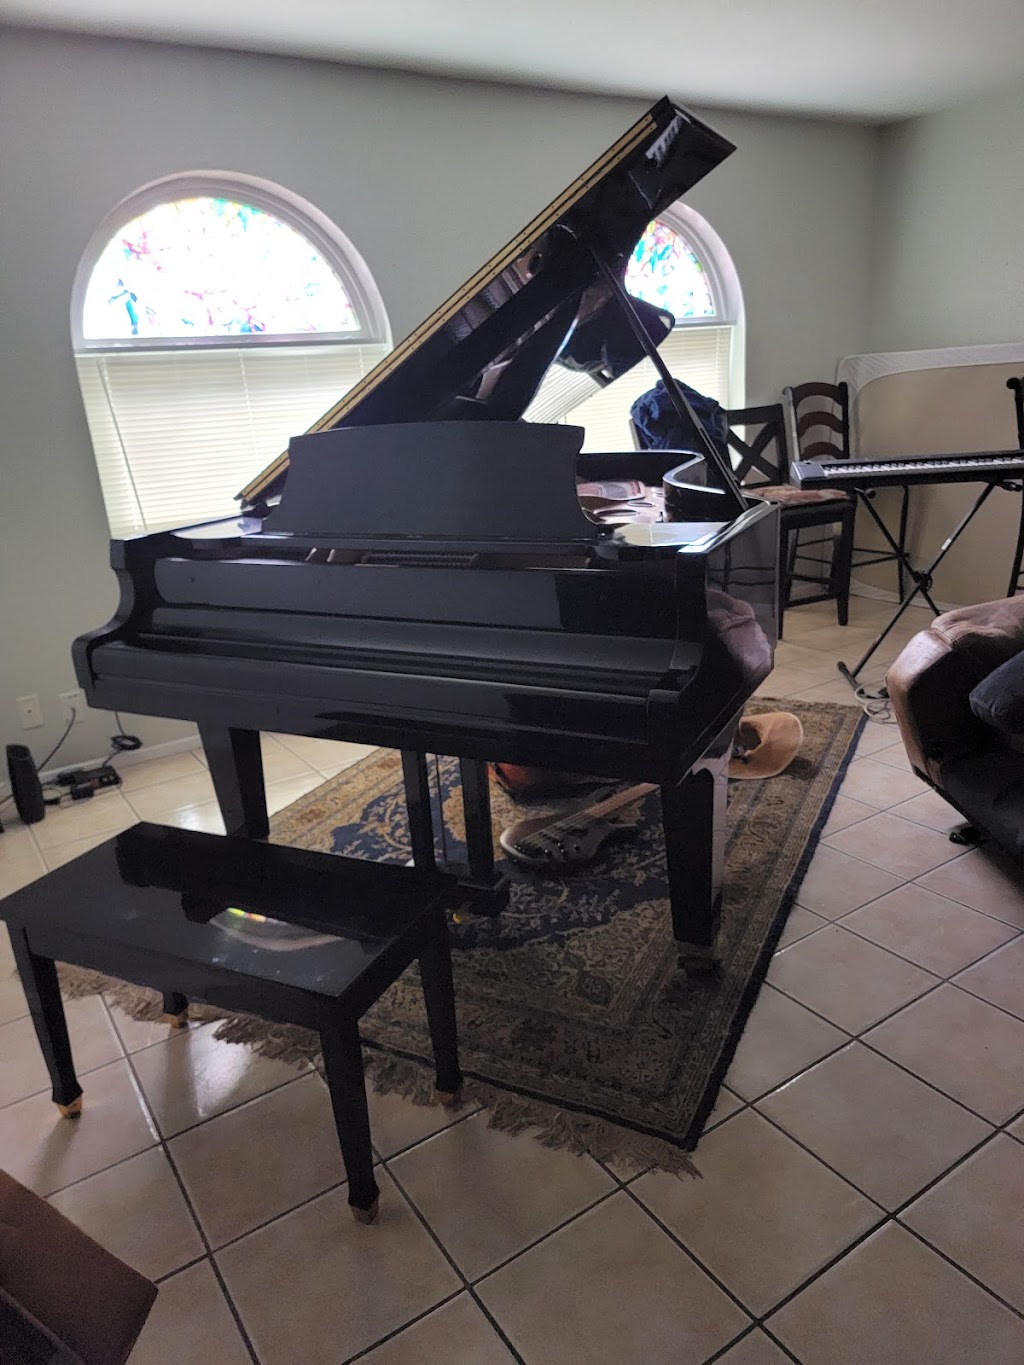 Piano Handlers | 1201 N Loop 1604 W Suite 107A, San Antonio, TX 78232, USA | Phone: (210) 508-4974